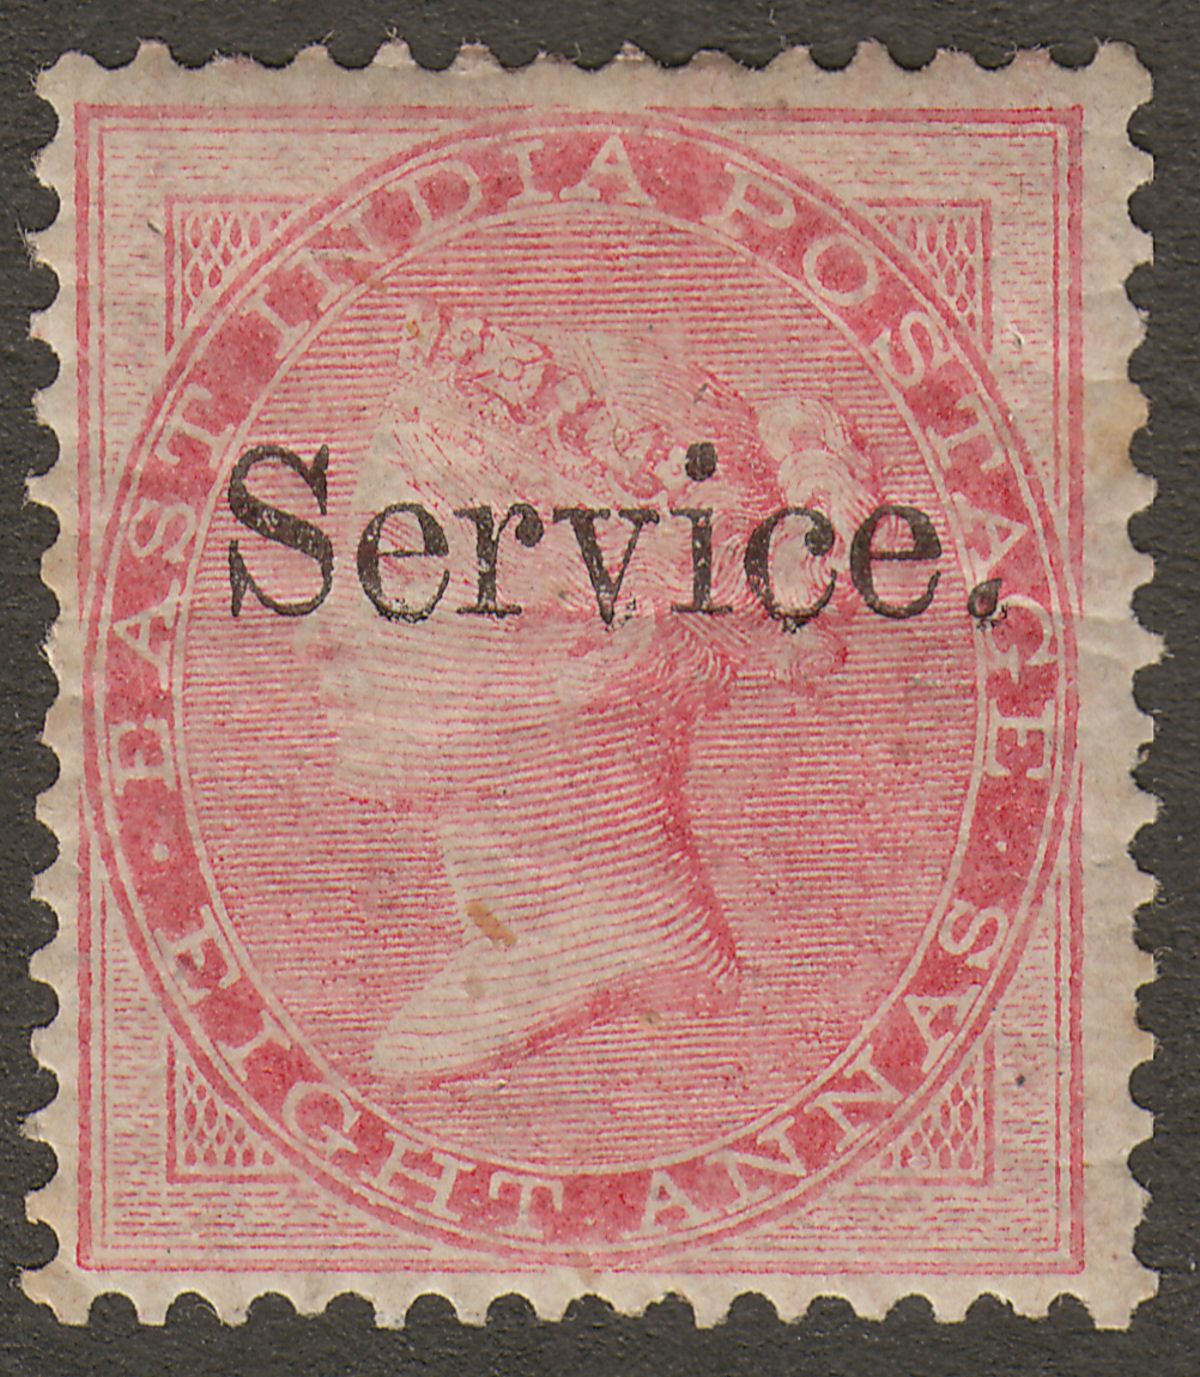 India 1866 QV Official Service Overprint 8a Carmine Mint SG O5 cat £55 tones